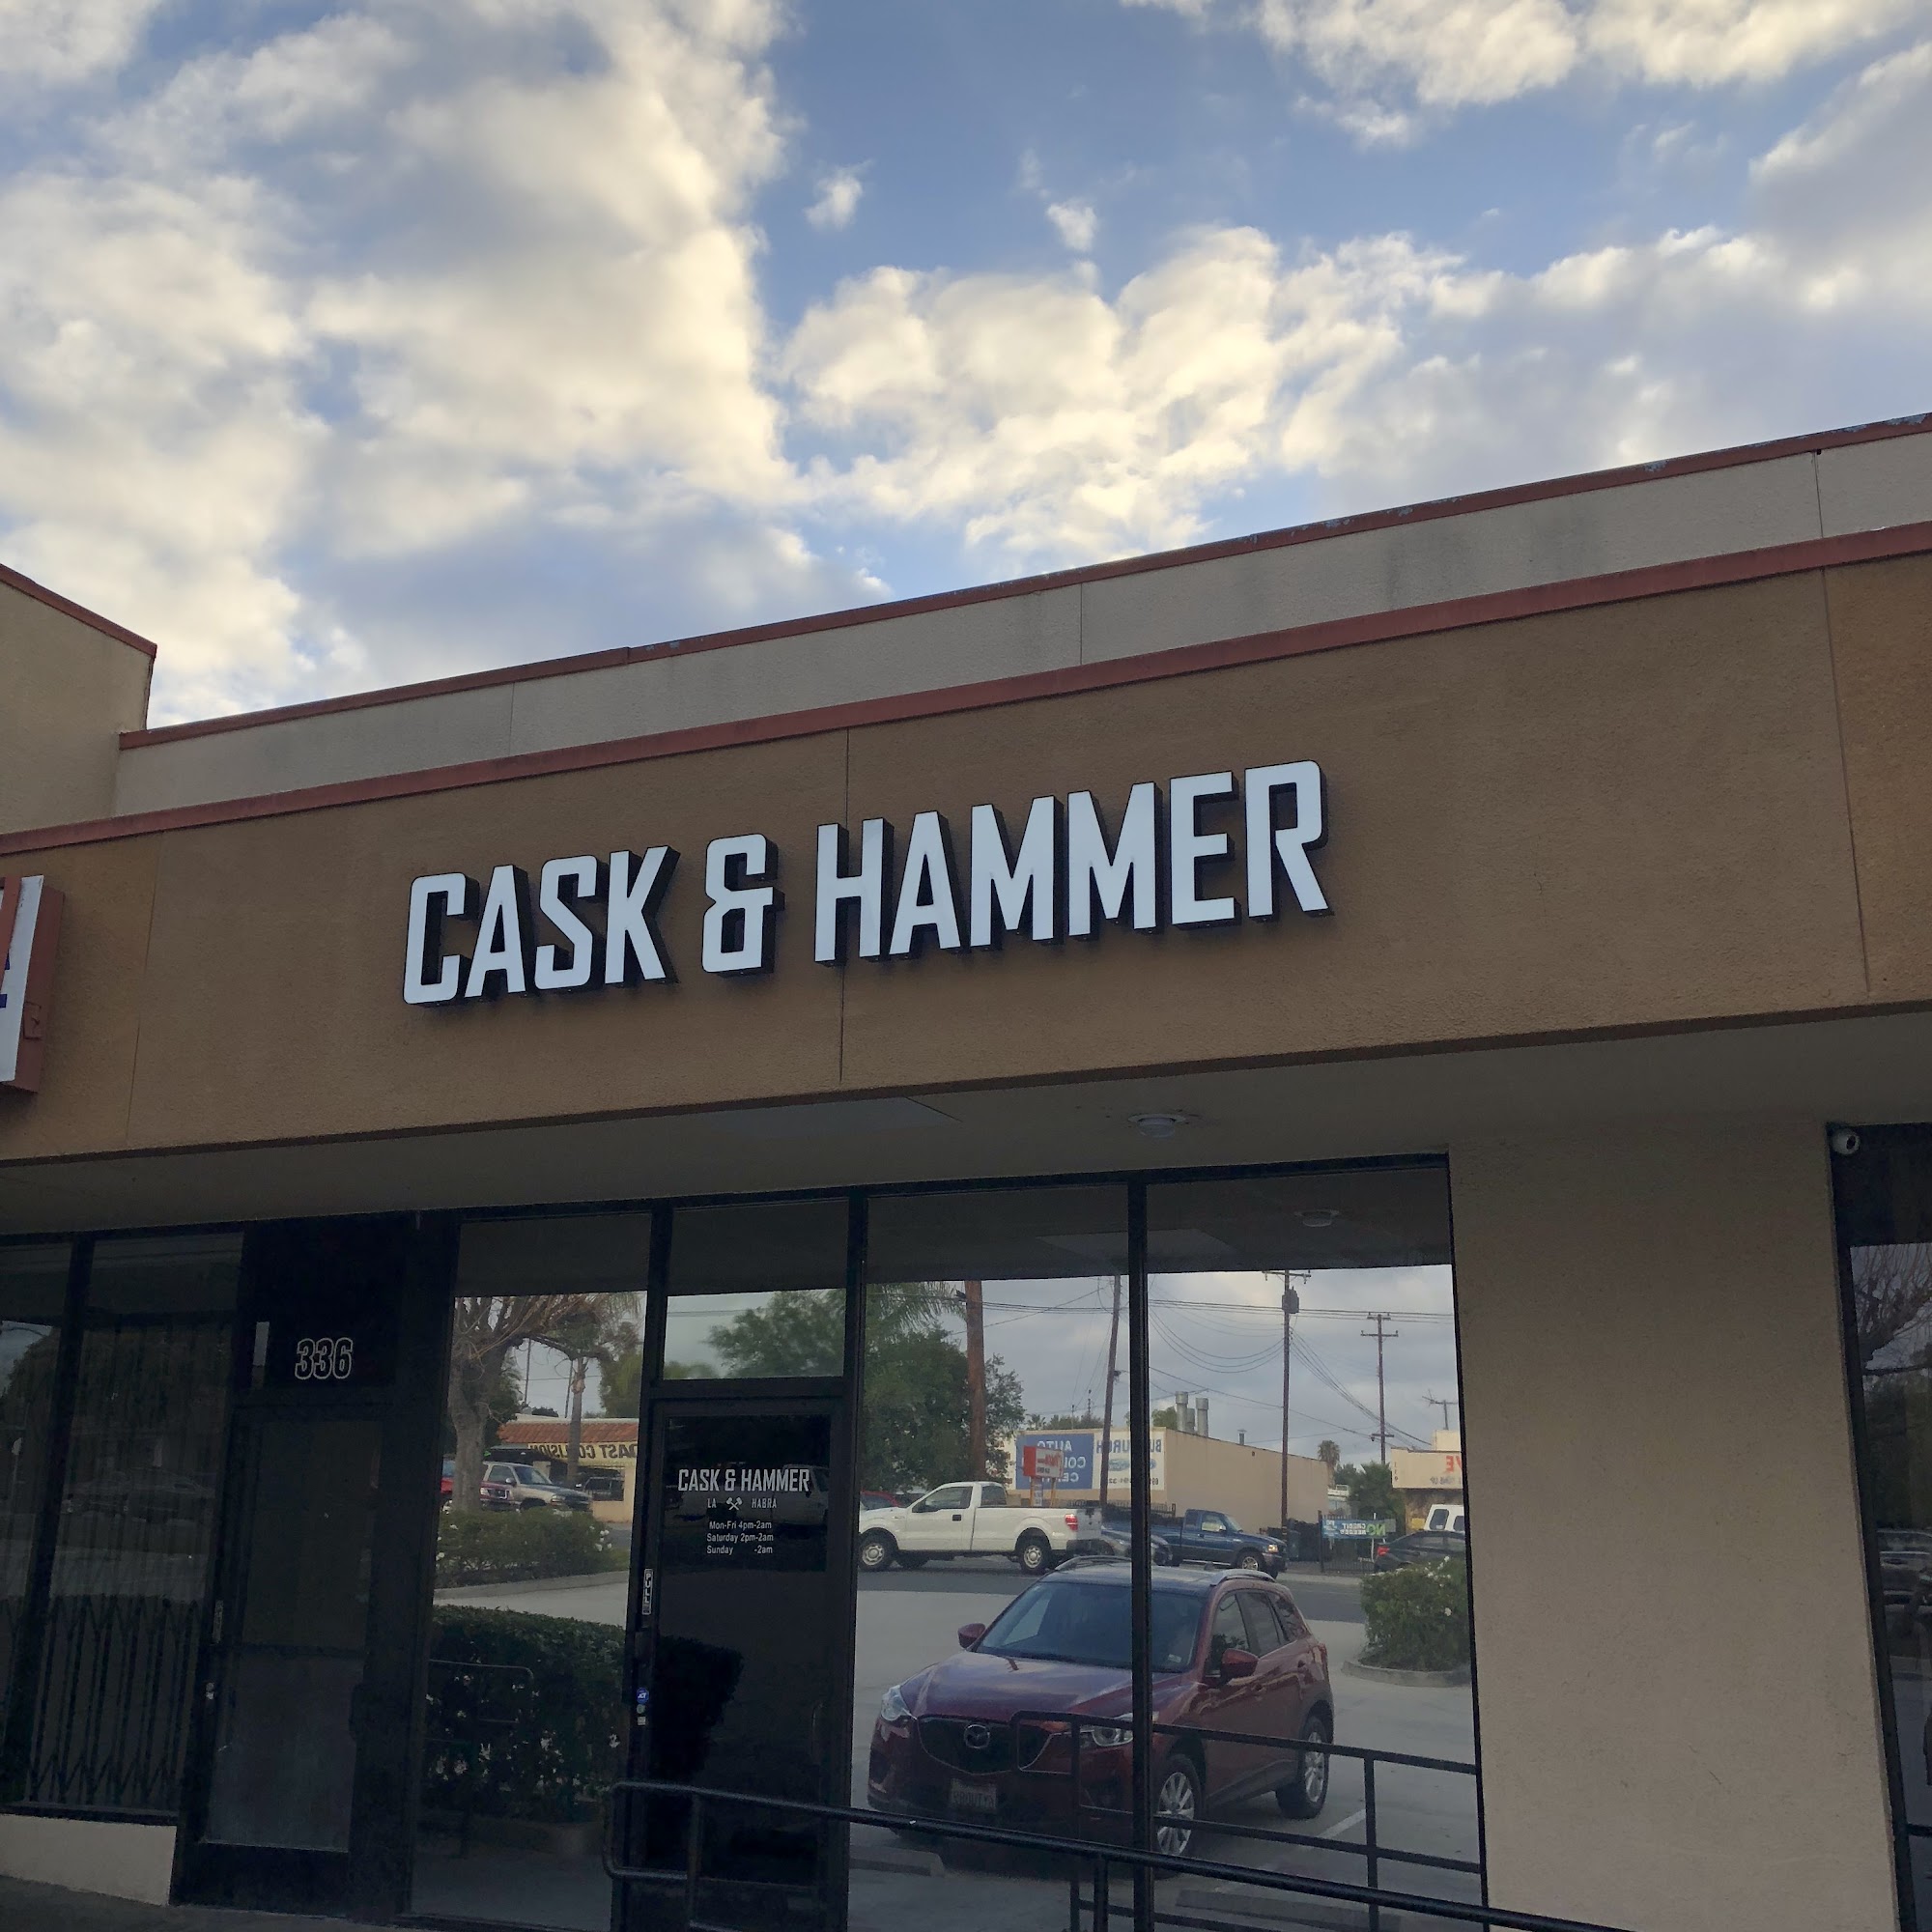 Cask & Hammer